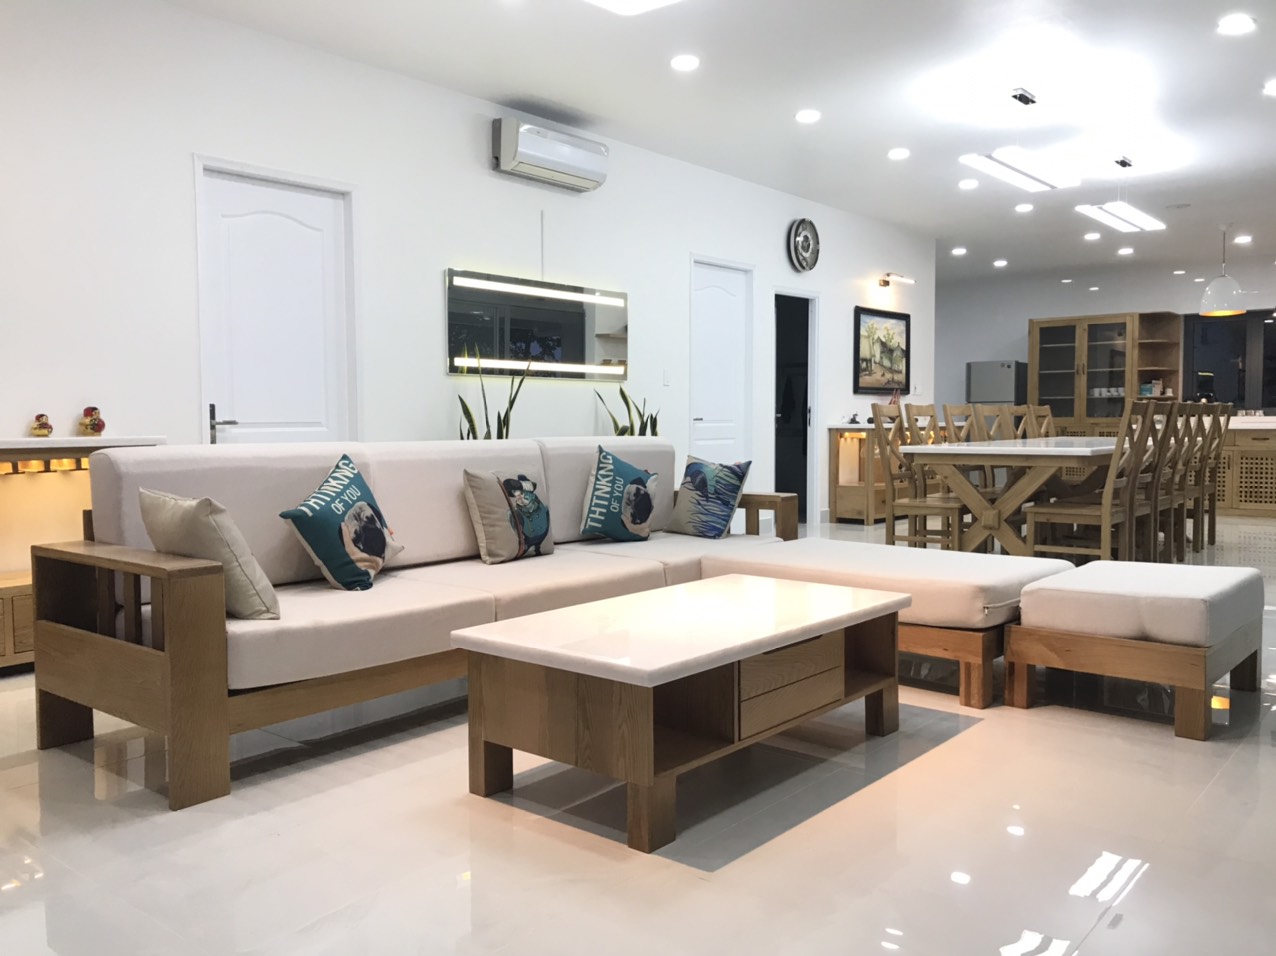 5 kinh nghiệm thiết kế nội thất căn hộ chung cư đẹp và tiết kiệm chi phí